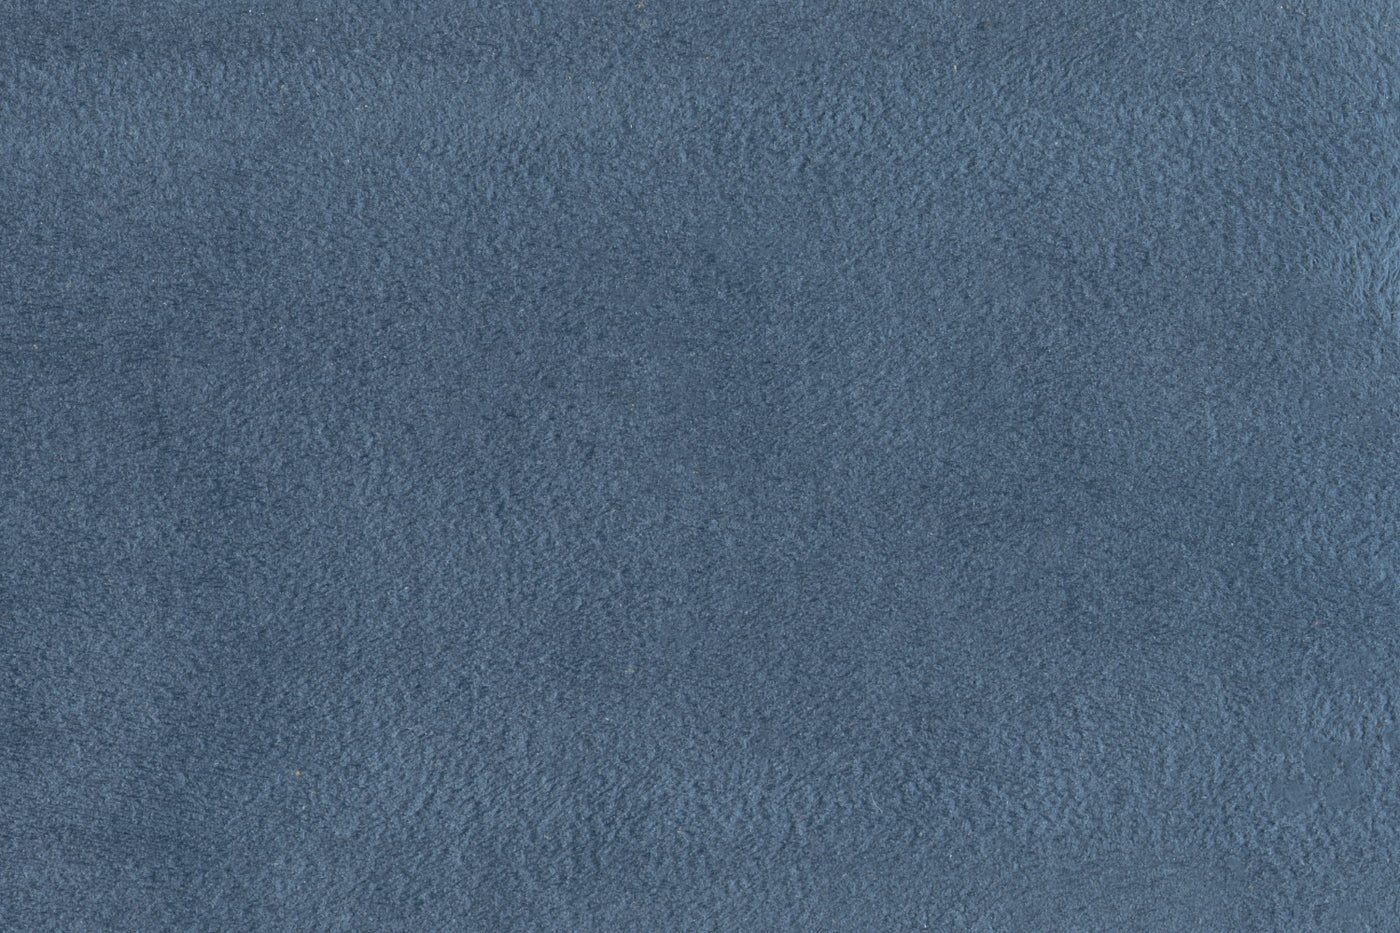 Collier Sofa - Cobalt Blue